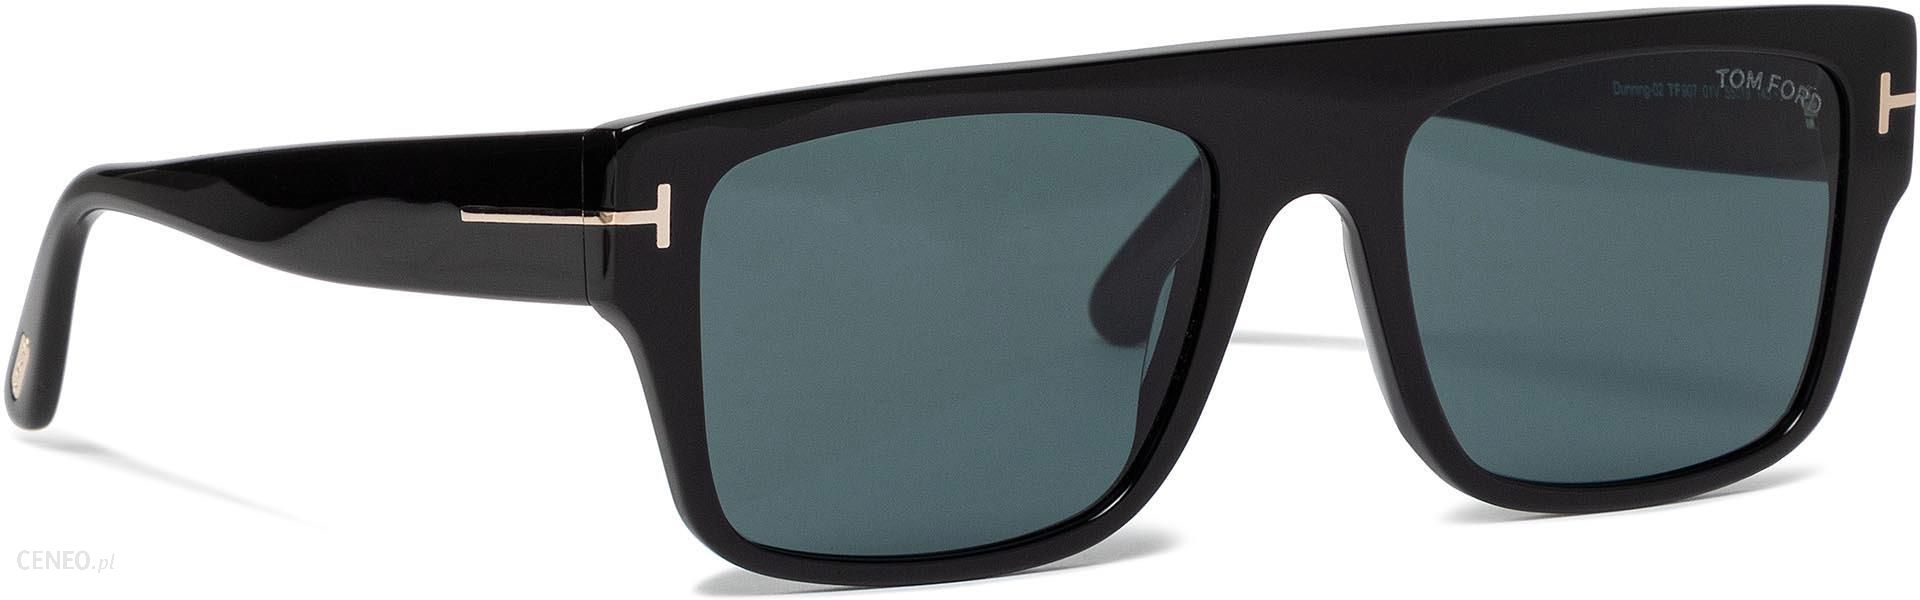 Okulary przeciwsłoneczne TOM FORD - Dunning FT0907/S 01V Black/Blue - Ceny  i opinie 